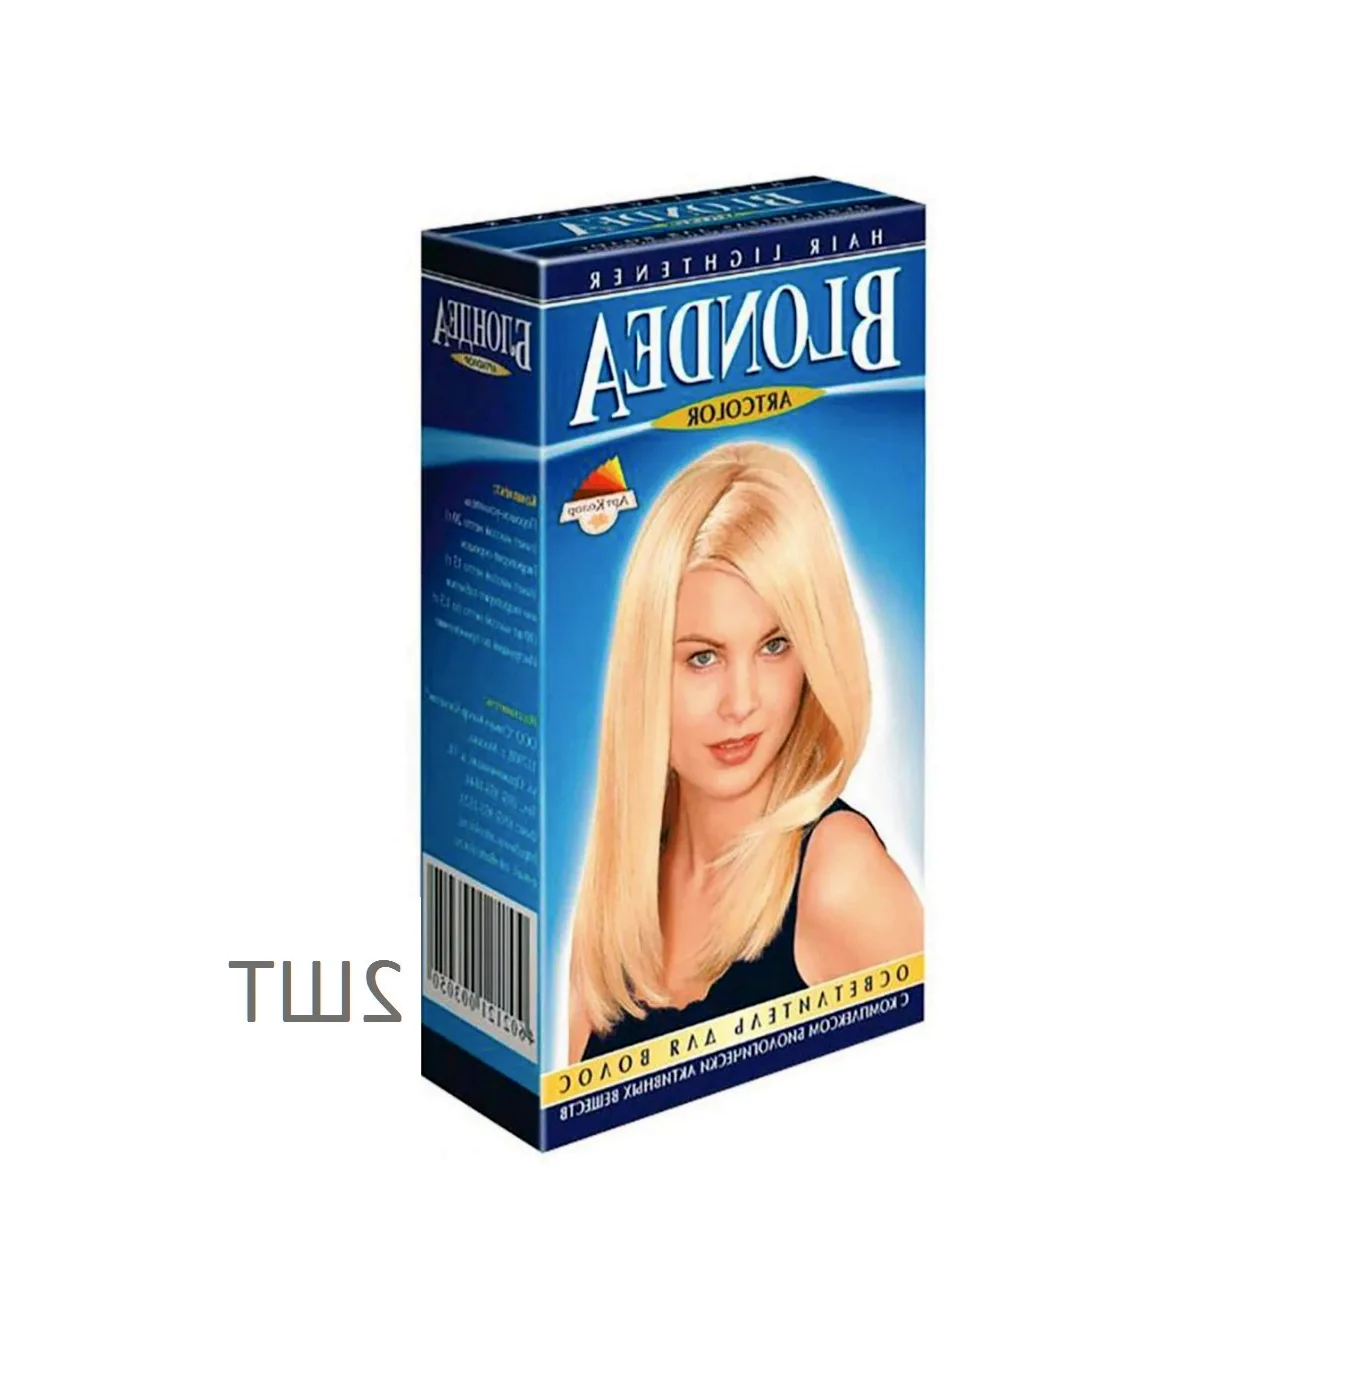 Артколор Блондеа осветлитель для волос 35гр